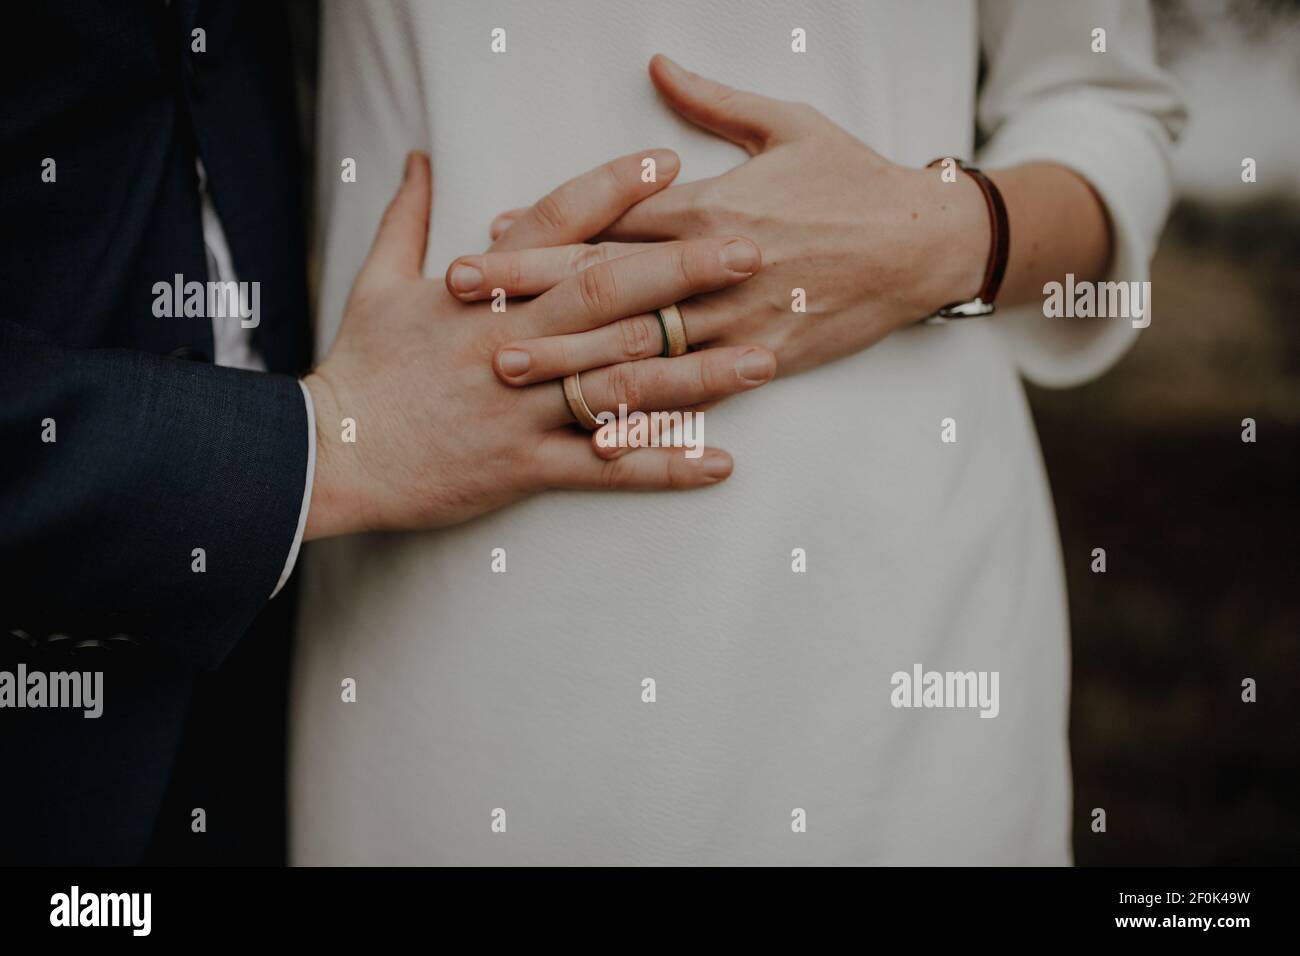 Bilder des Bauches einer schwangeren Frau. Ihre Hände und die Ihres Mannes liegen gefaltet auf ihrem runden Bauch. Foto Stock